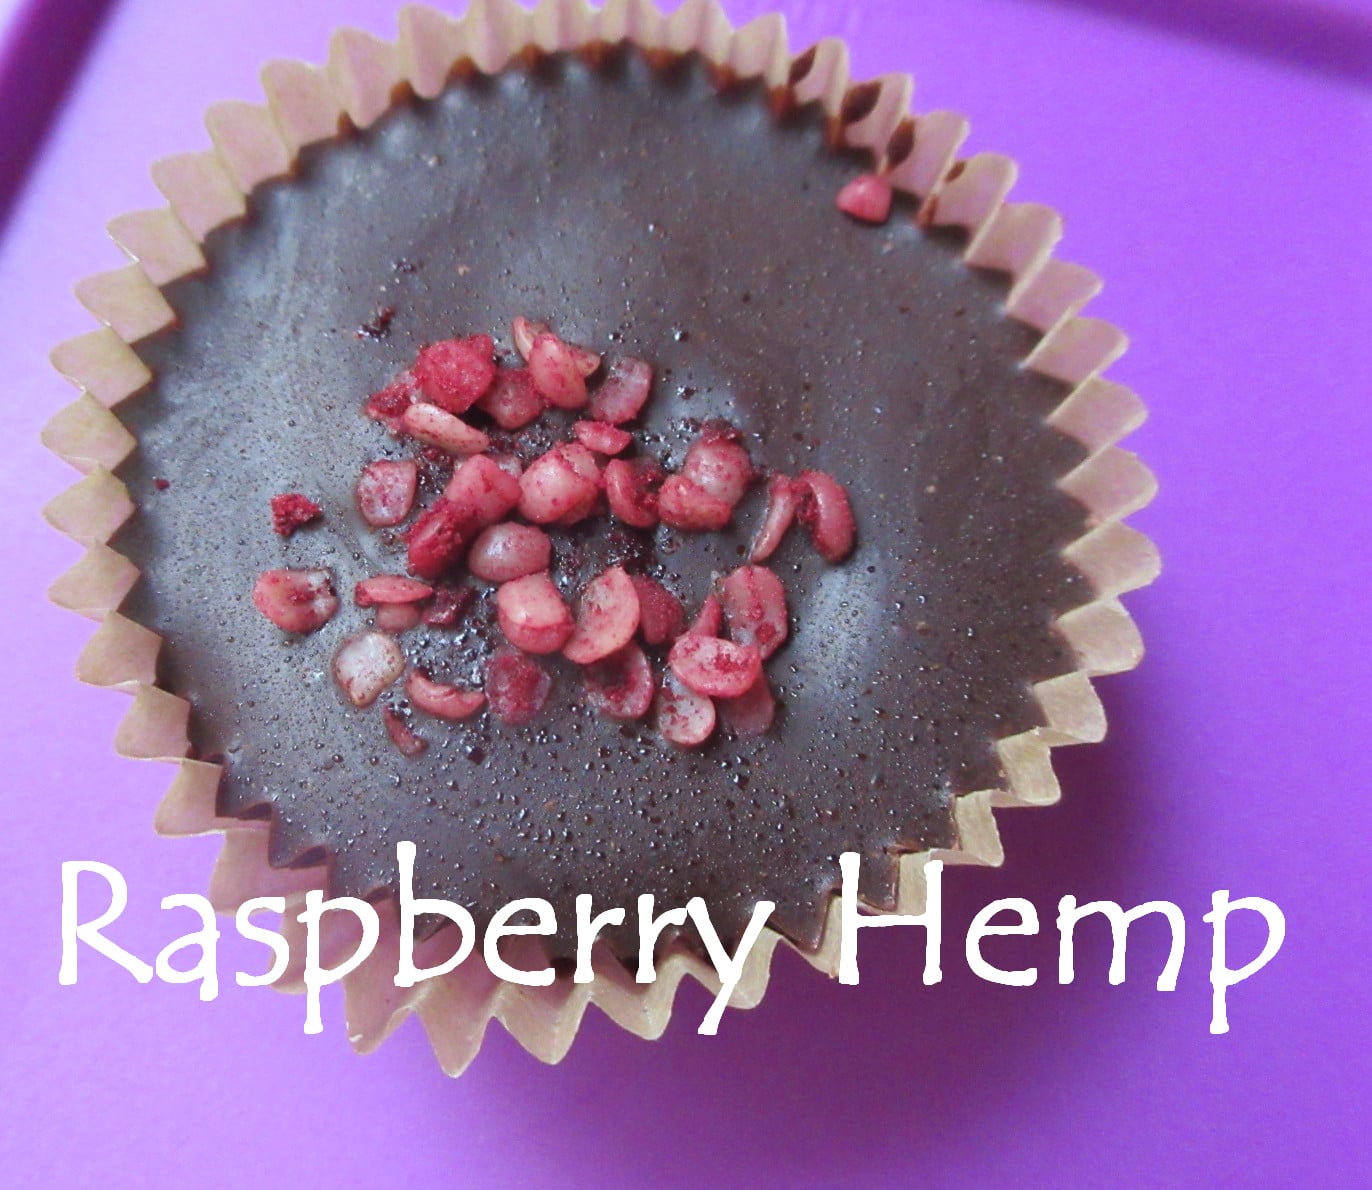 Raspberry hemp cup